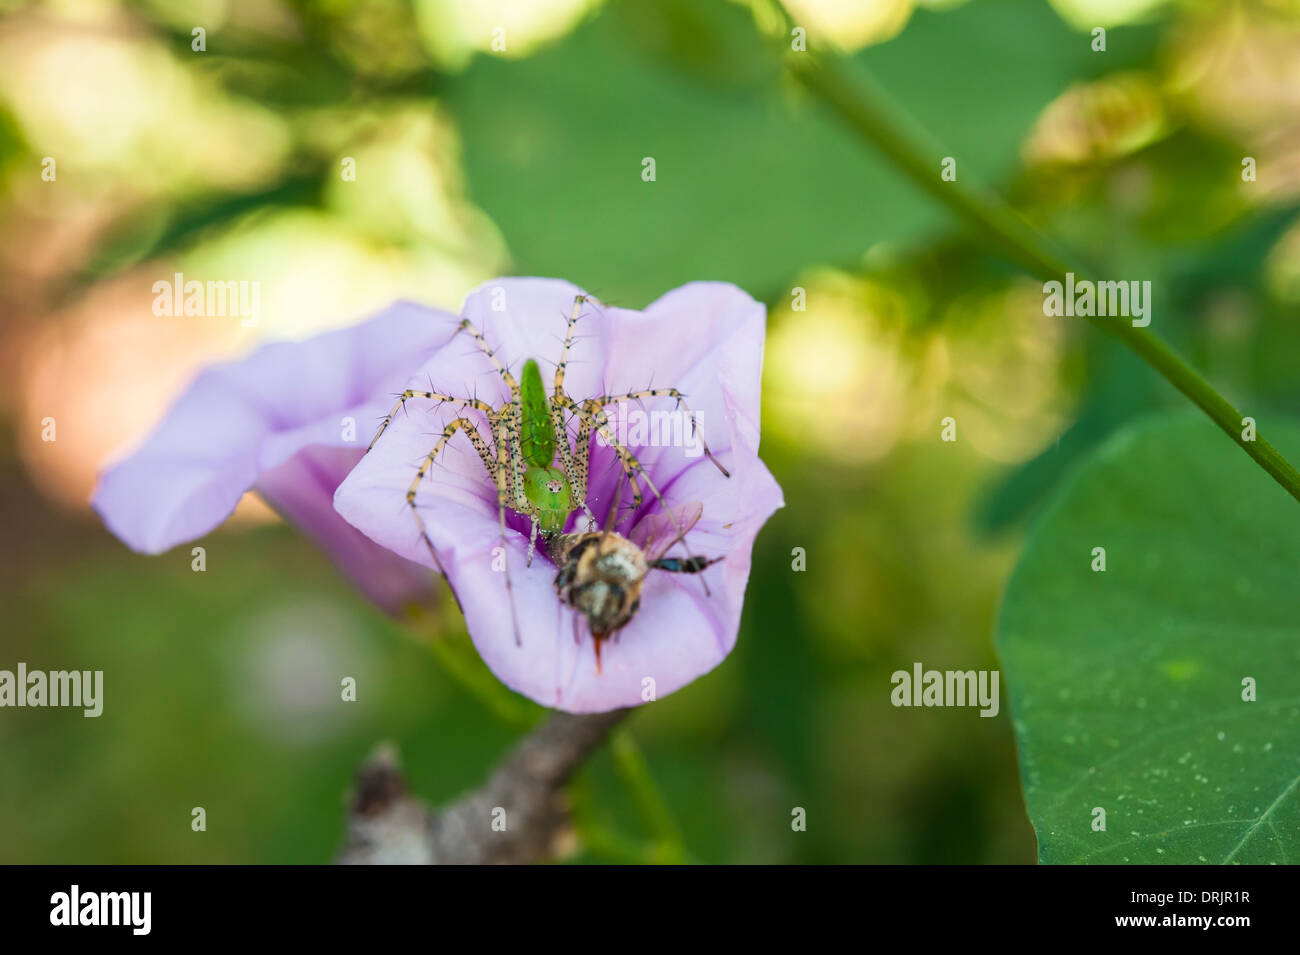 Grün Spinne sitzt in einer lila Trichterwinde Blume Essen eine Honigbiene Stockfoto